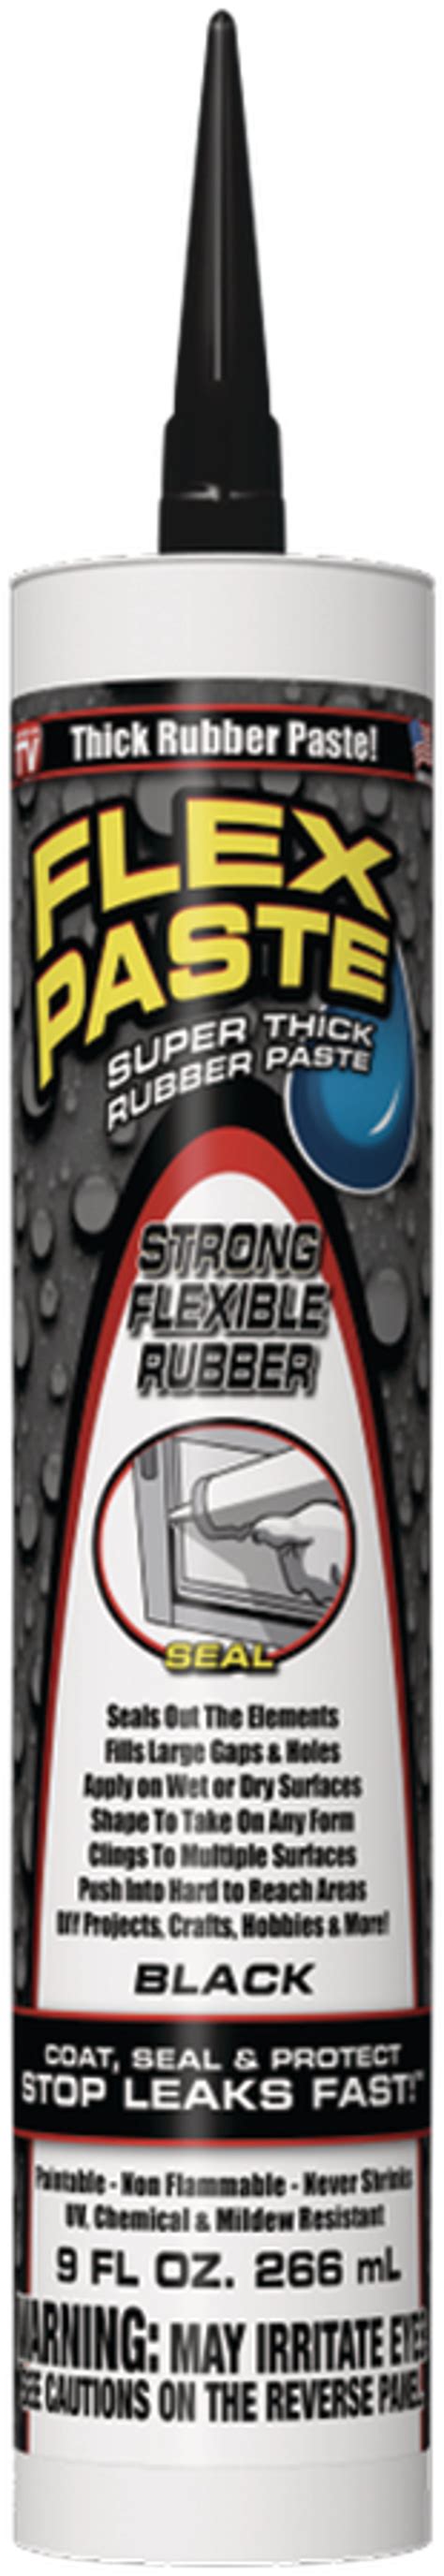 Buy Flex Paste Rubber Sealant 3 Lb Black